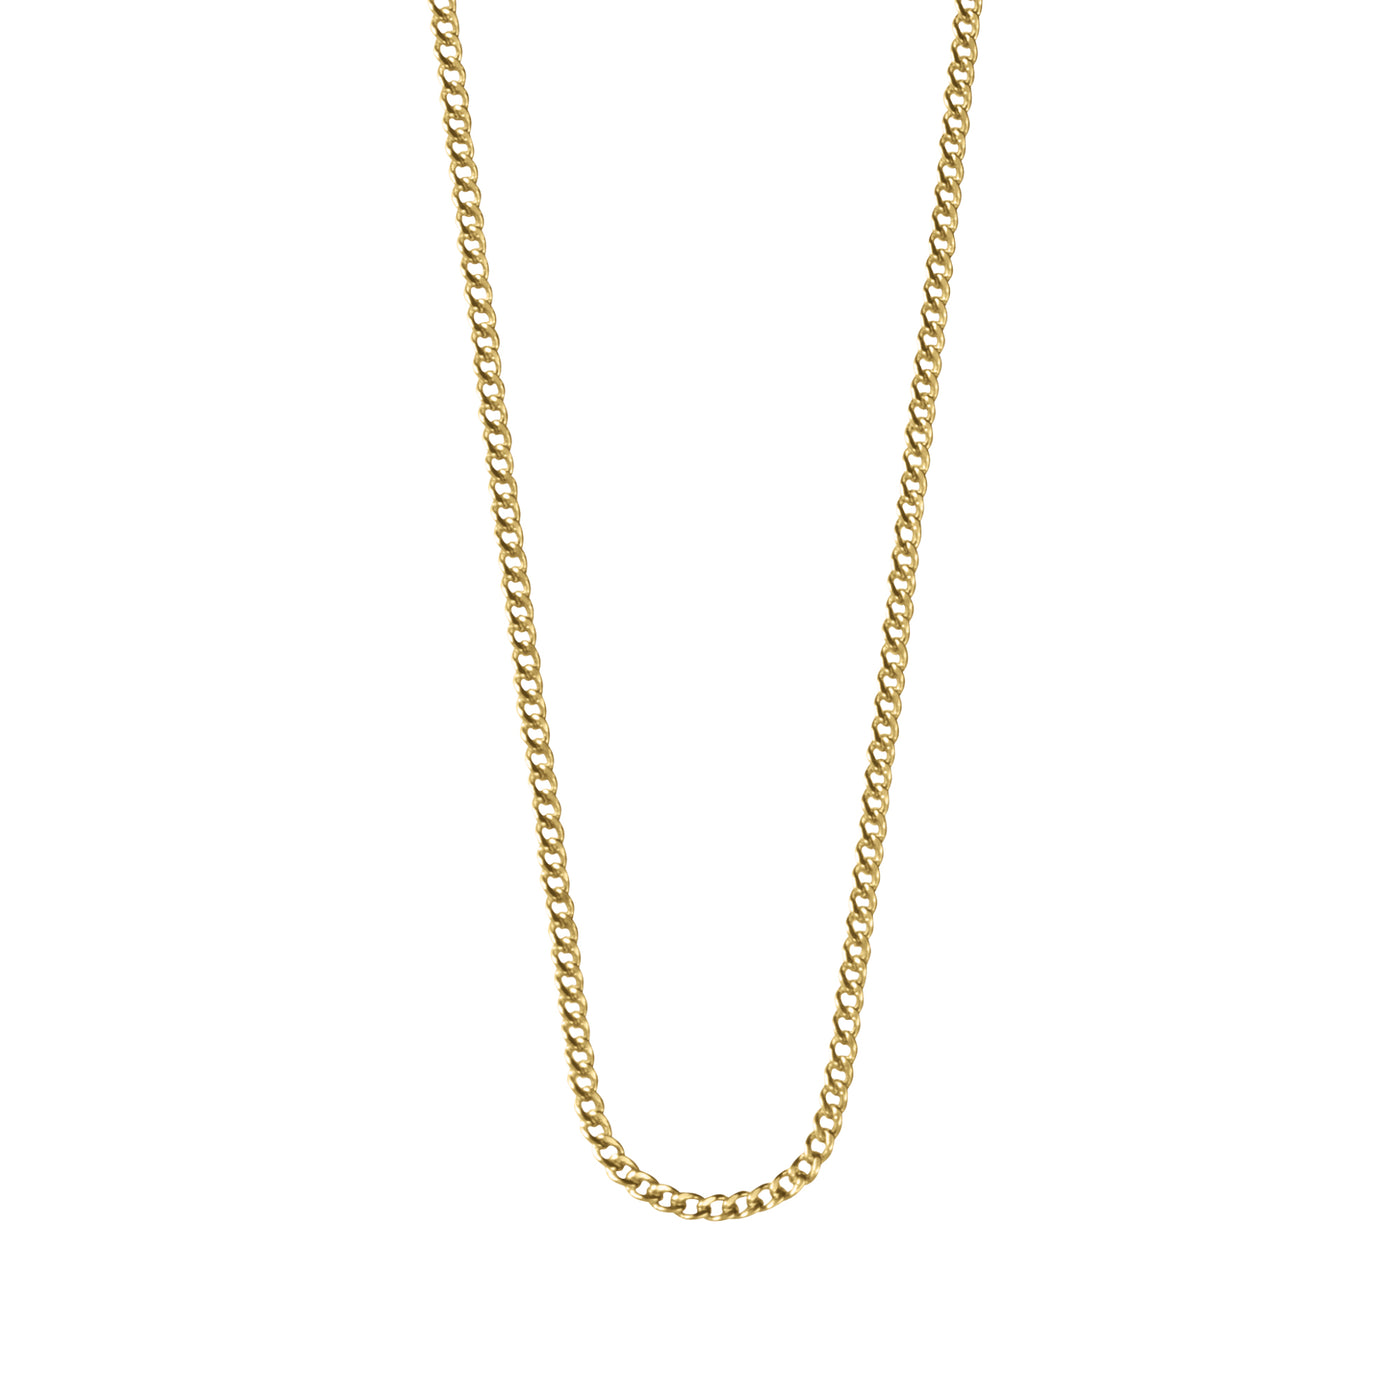 Kirstin Ash Bespoke Curb Chain (18-20") in Gold Vermeil